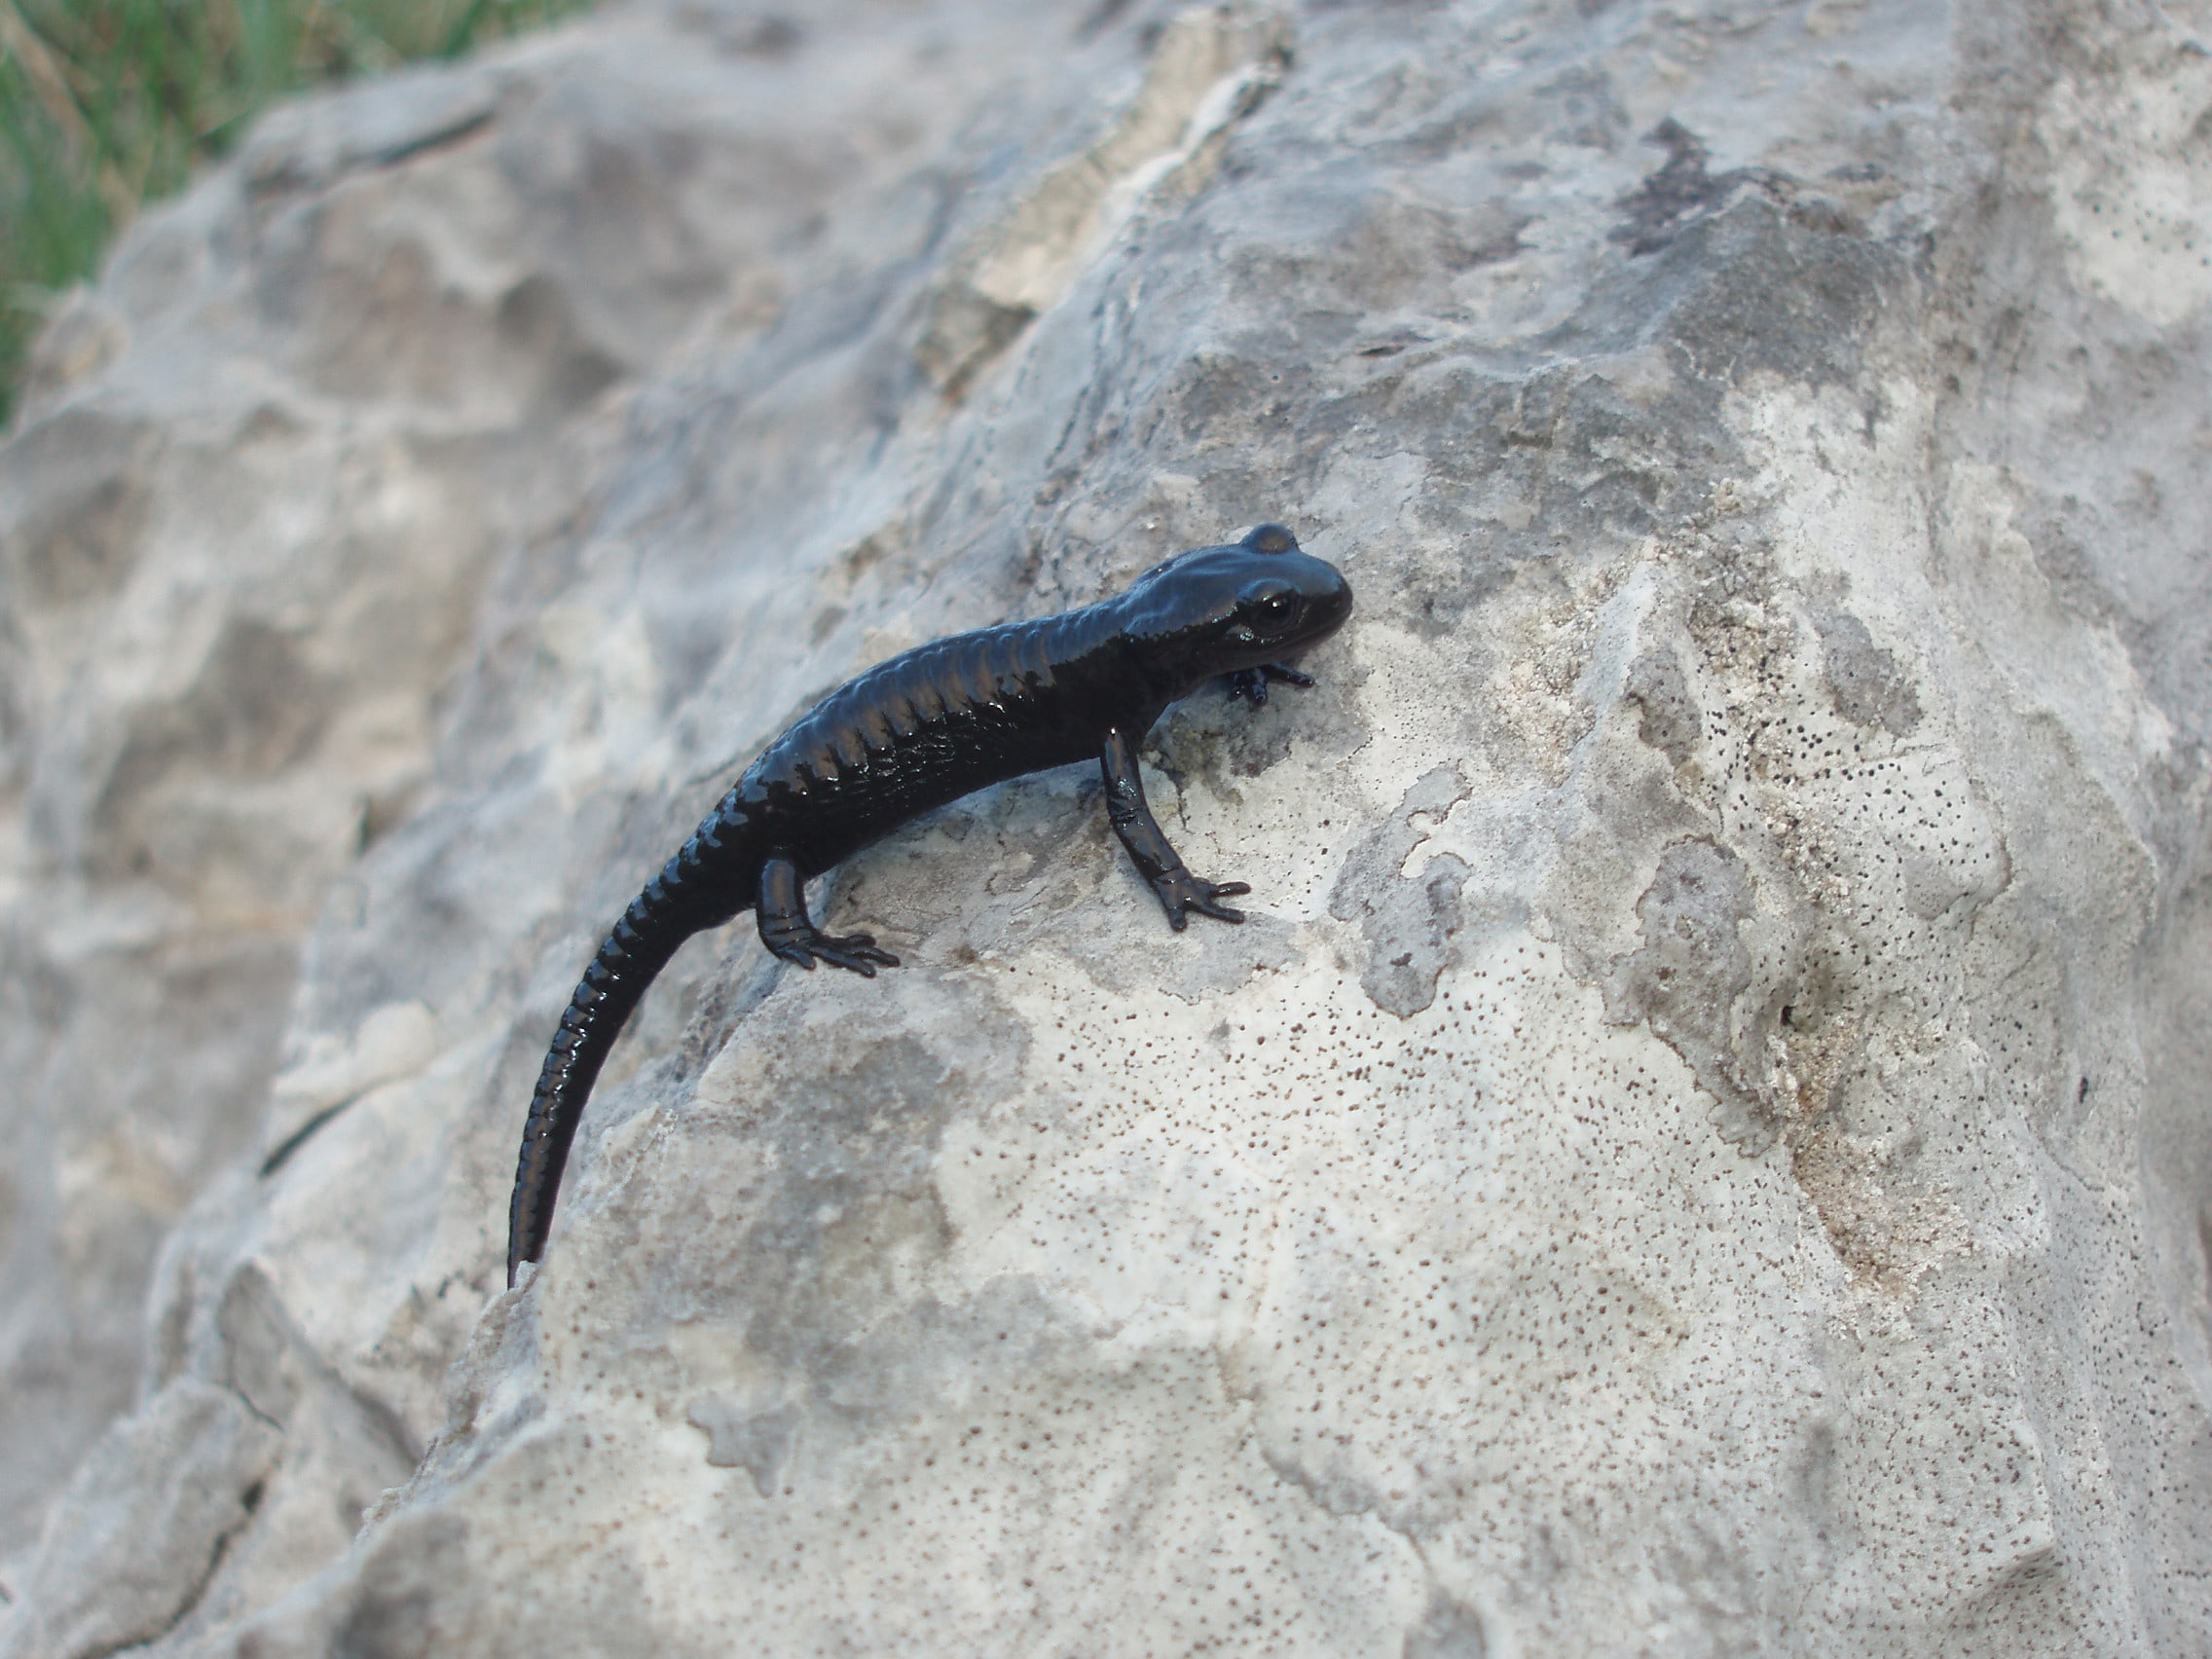 Salamandra atra prenjsis, juveniles